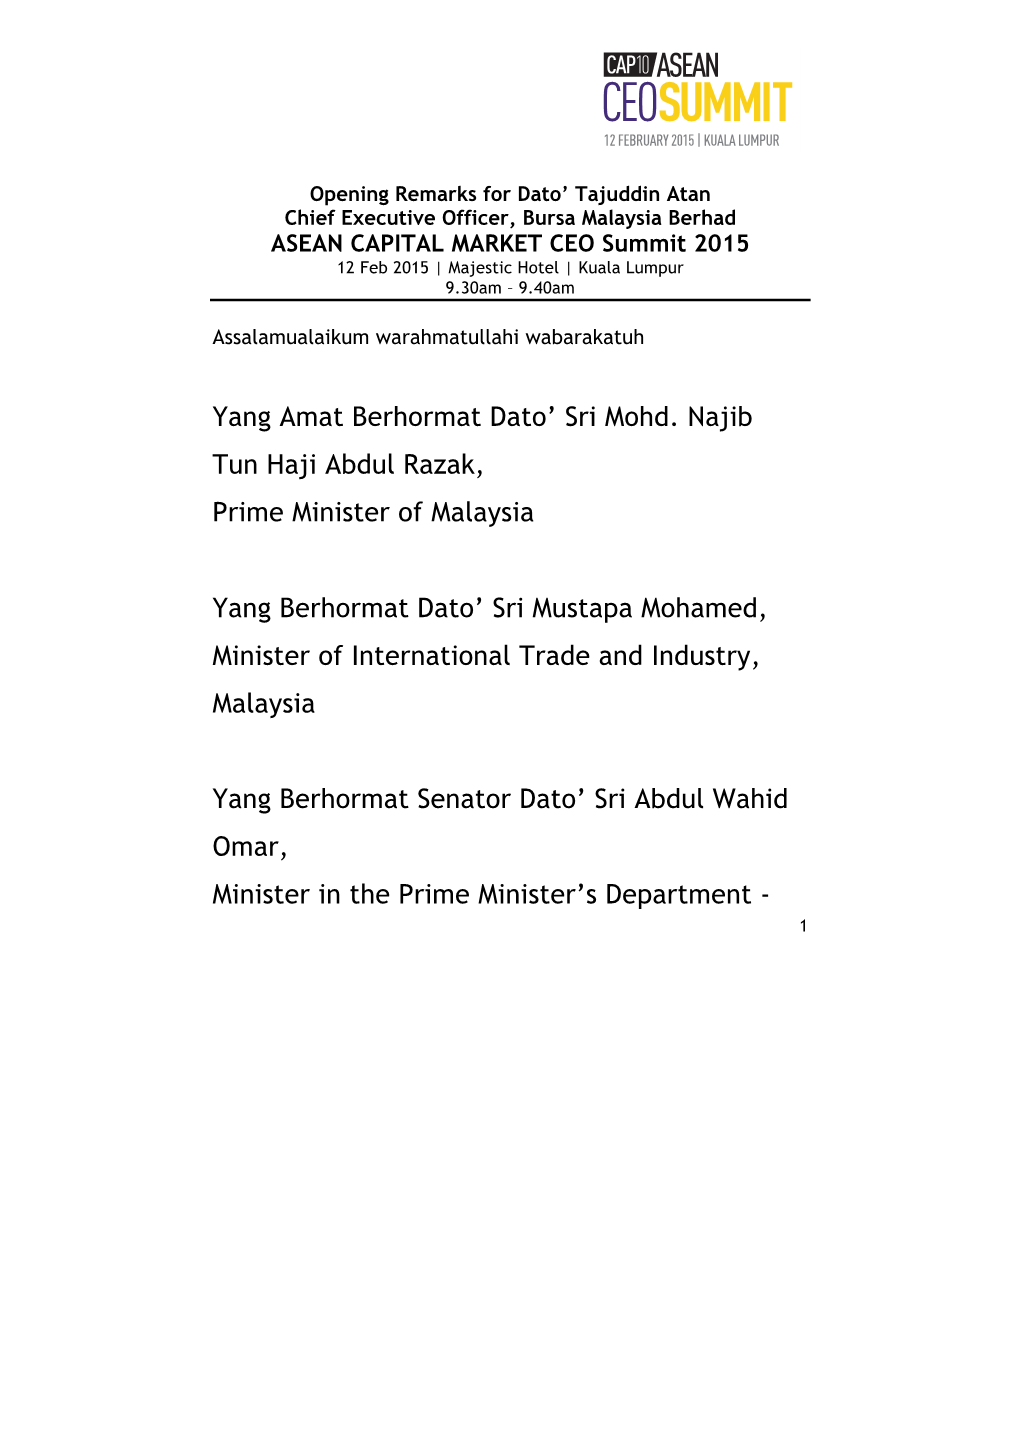 Yang Amat Berhormat Dato' Sri Mohd. Najib Tun Haji Abdul Razak, Prime